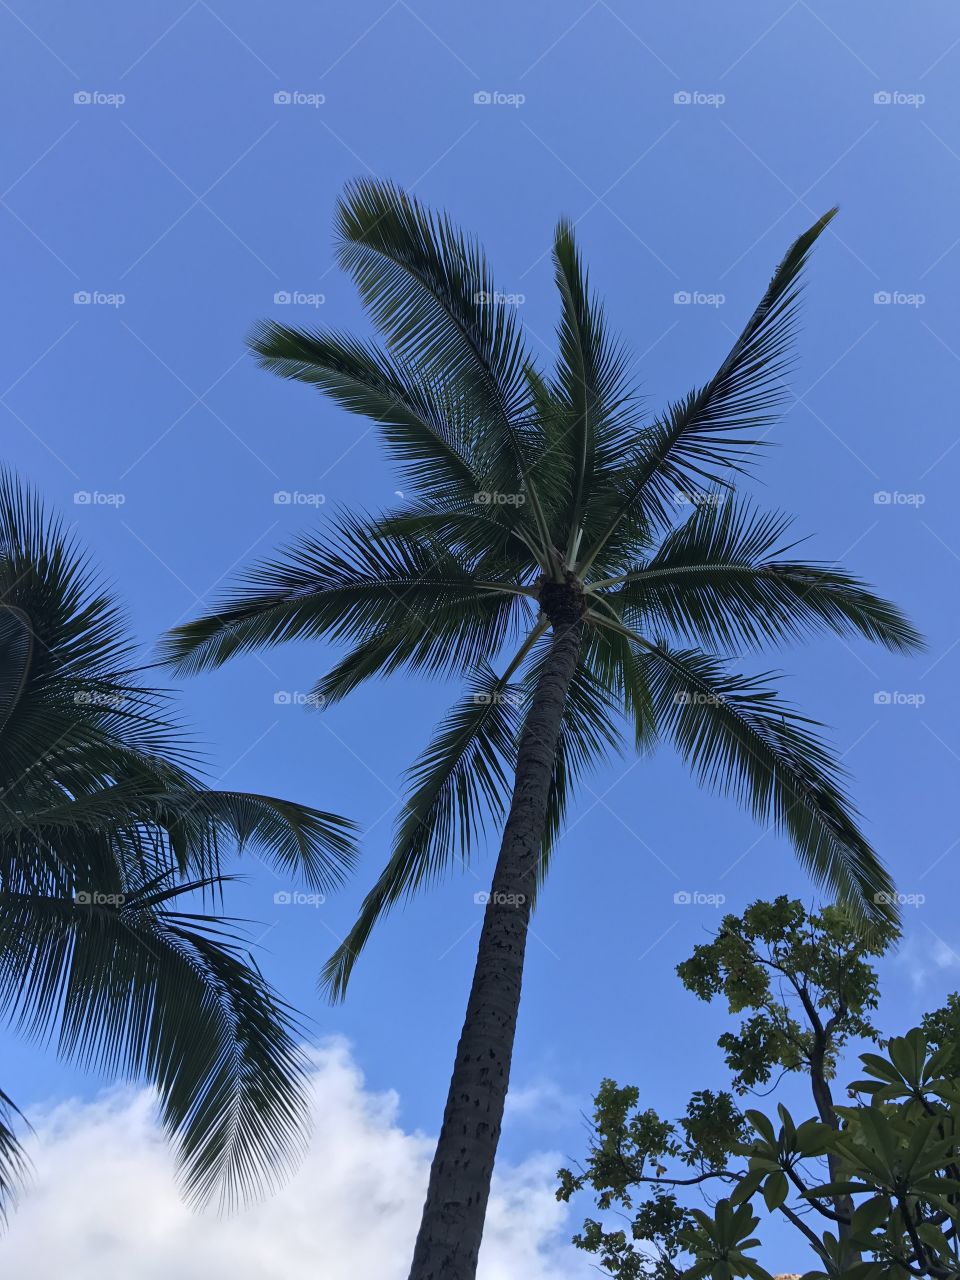 Moon & Palm
Makaha, Hawaii